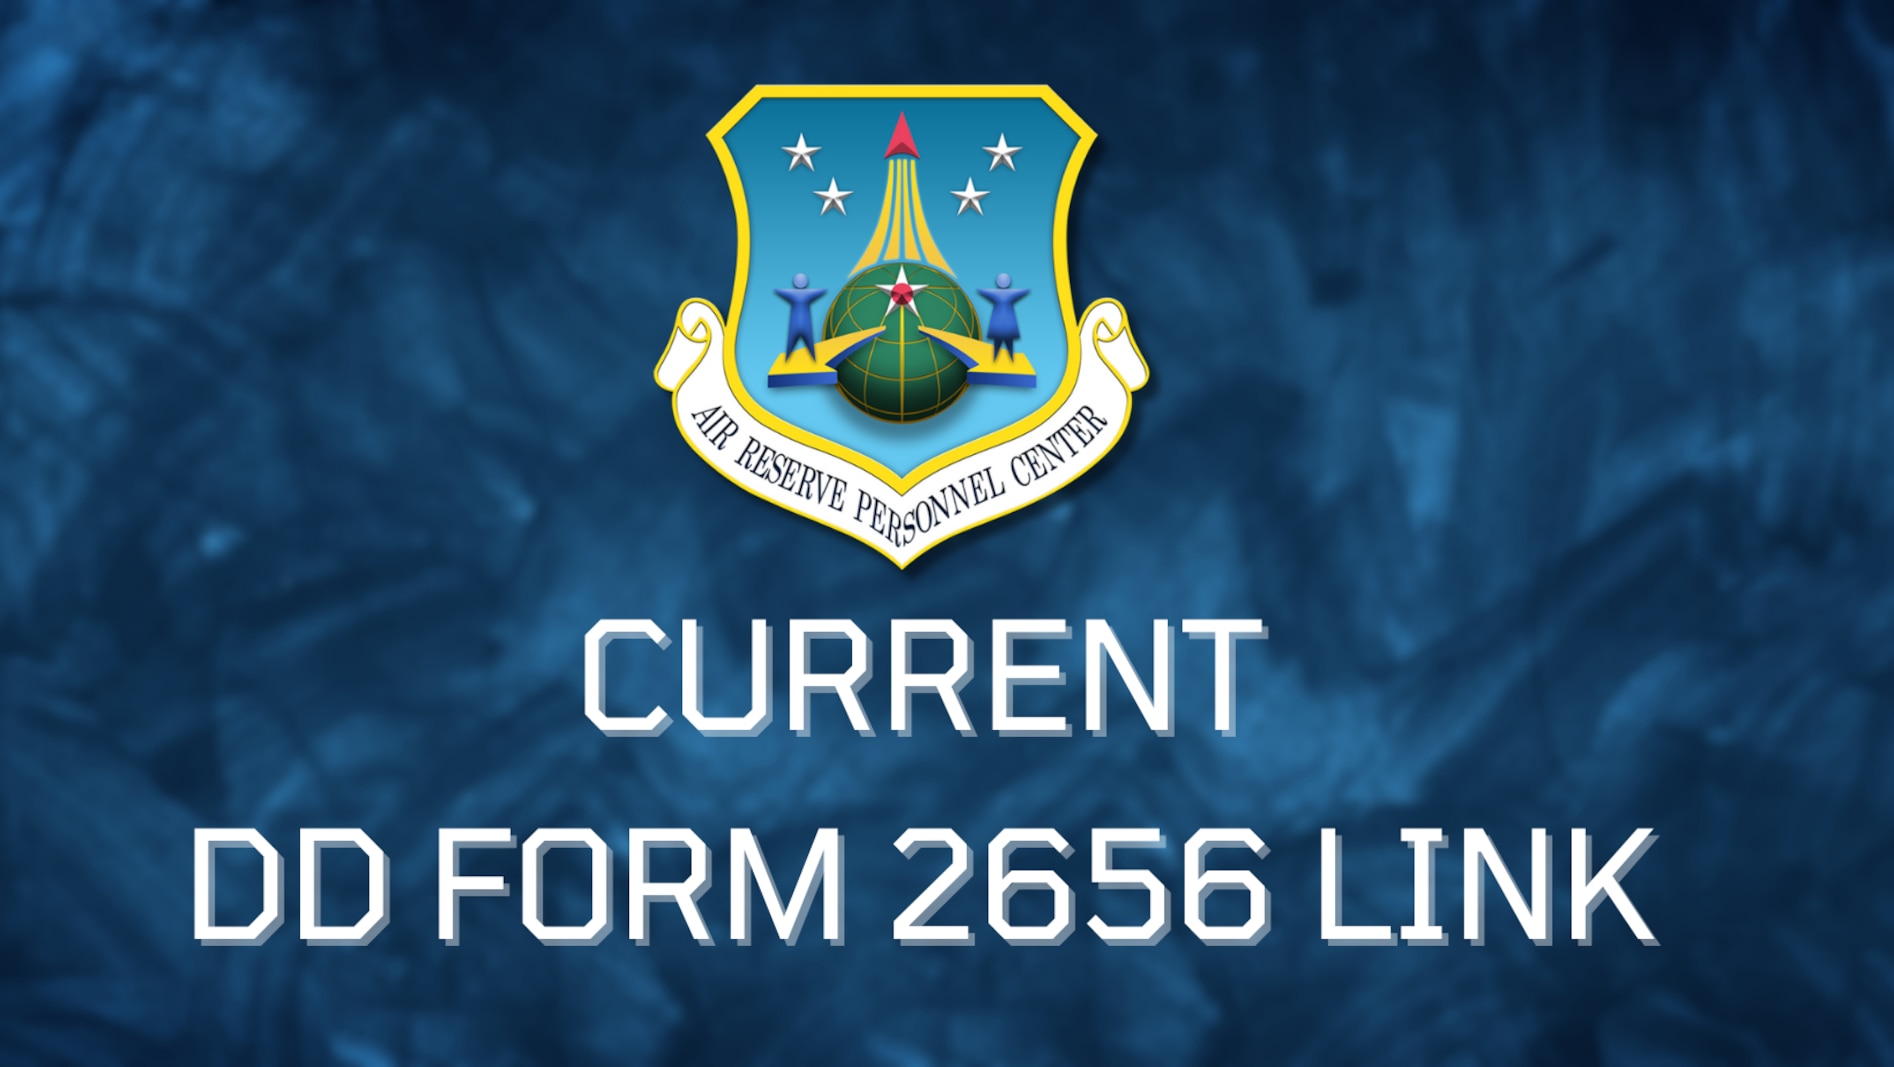 DD Form 2656